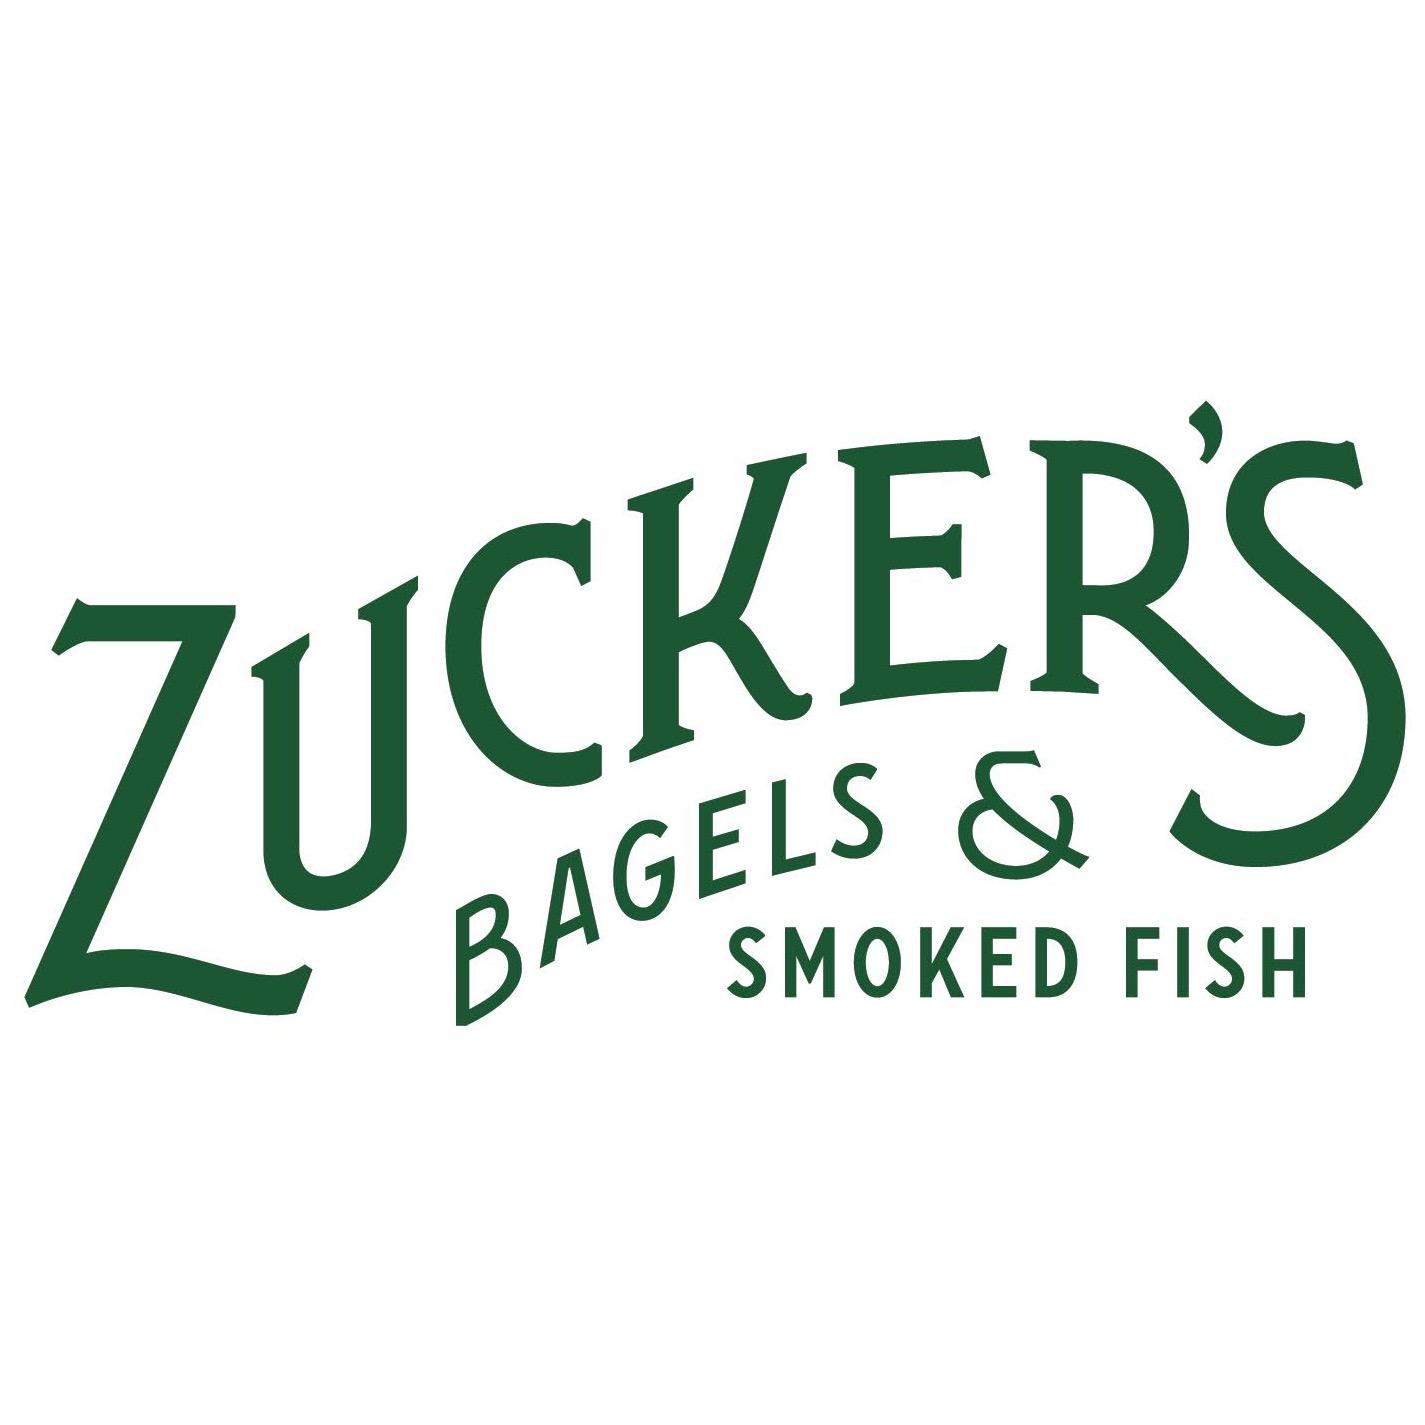 Zucker's Bagels & Smoked Fish Photo